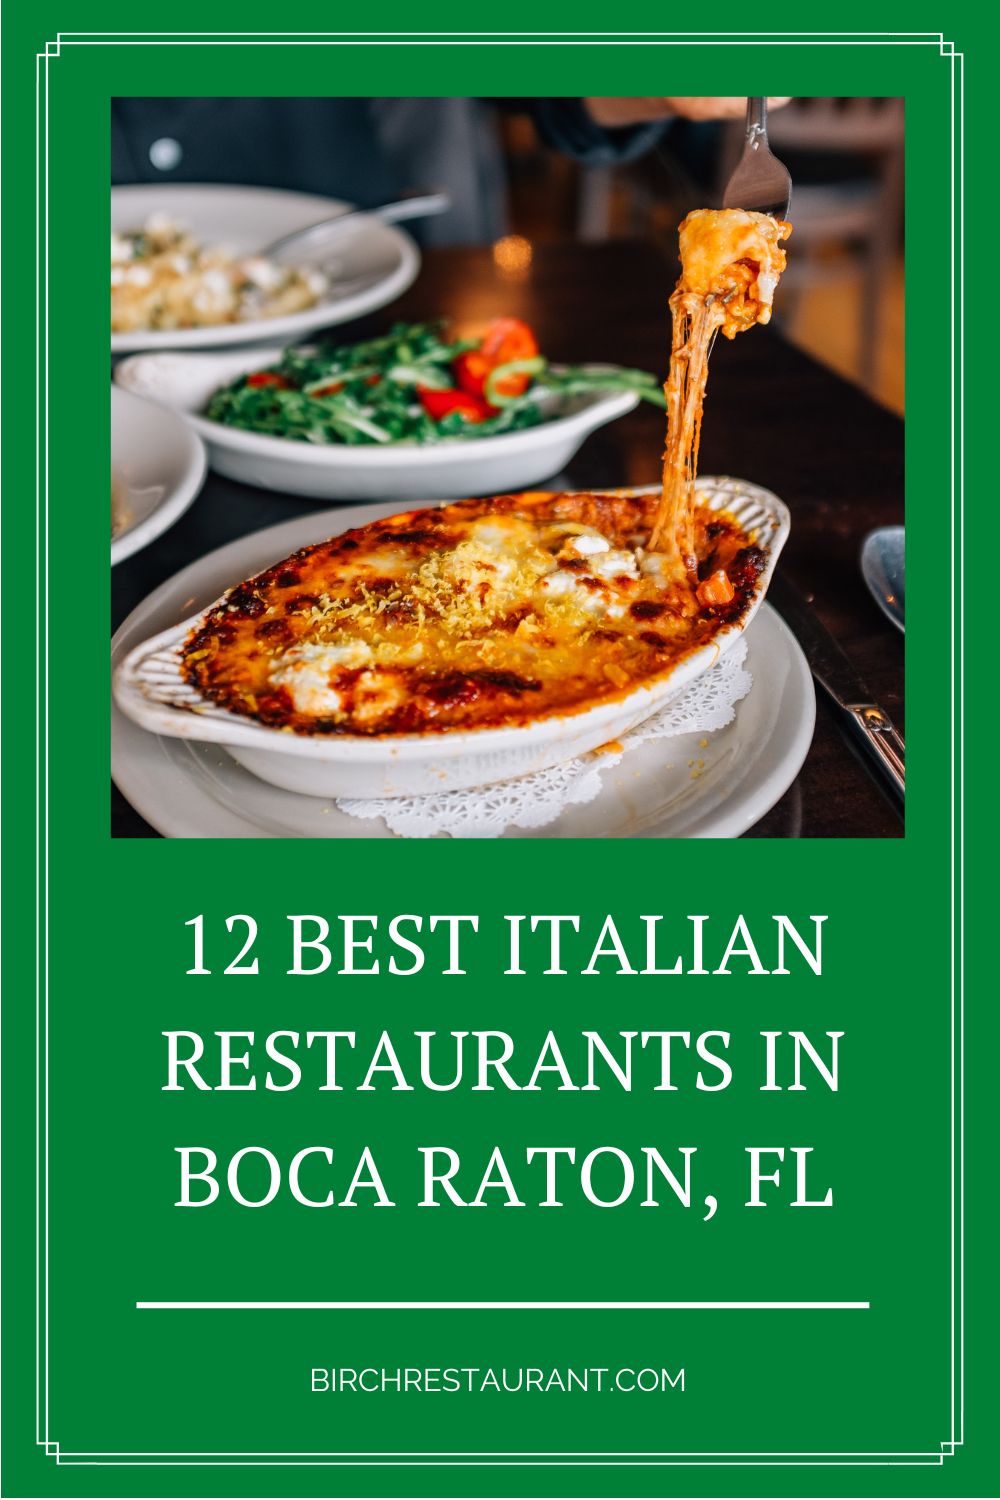 Best Italian Restaurants in Boca Raton